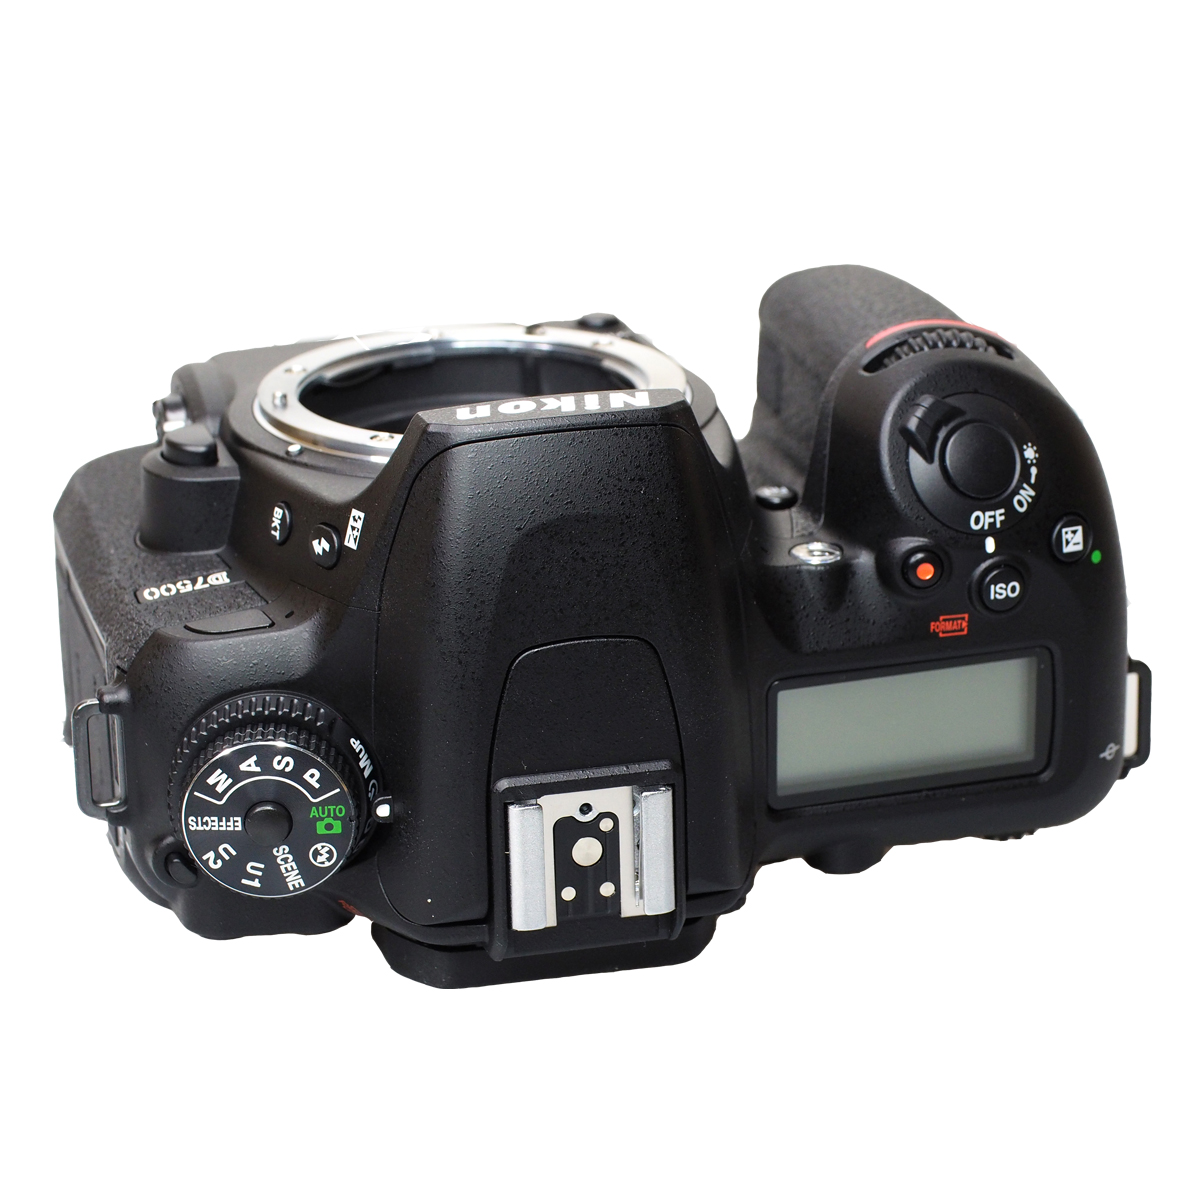 NIKON D 7500 Digitalkameragehäuse Spiegelreflexkamera WLAN- Black, LCD